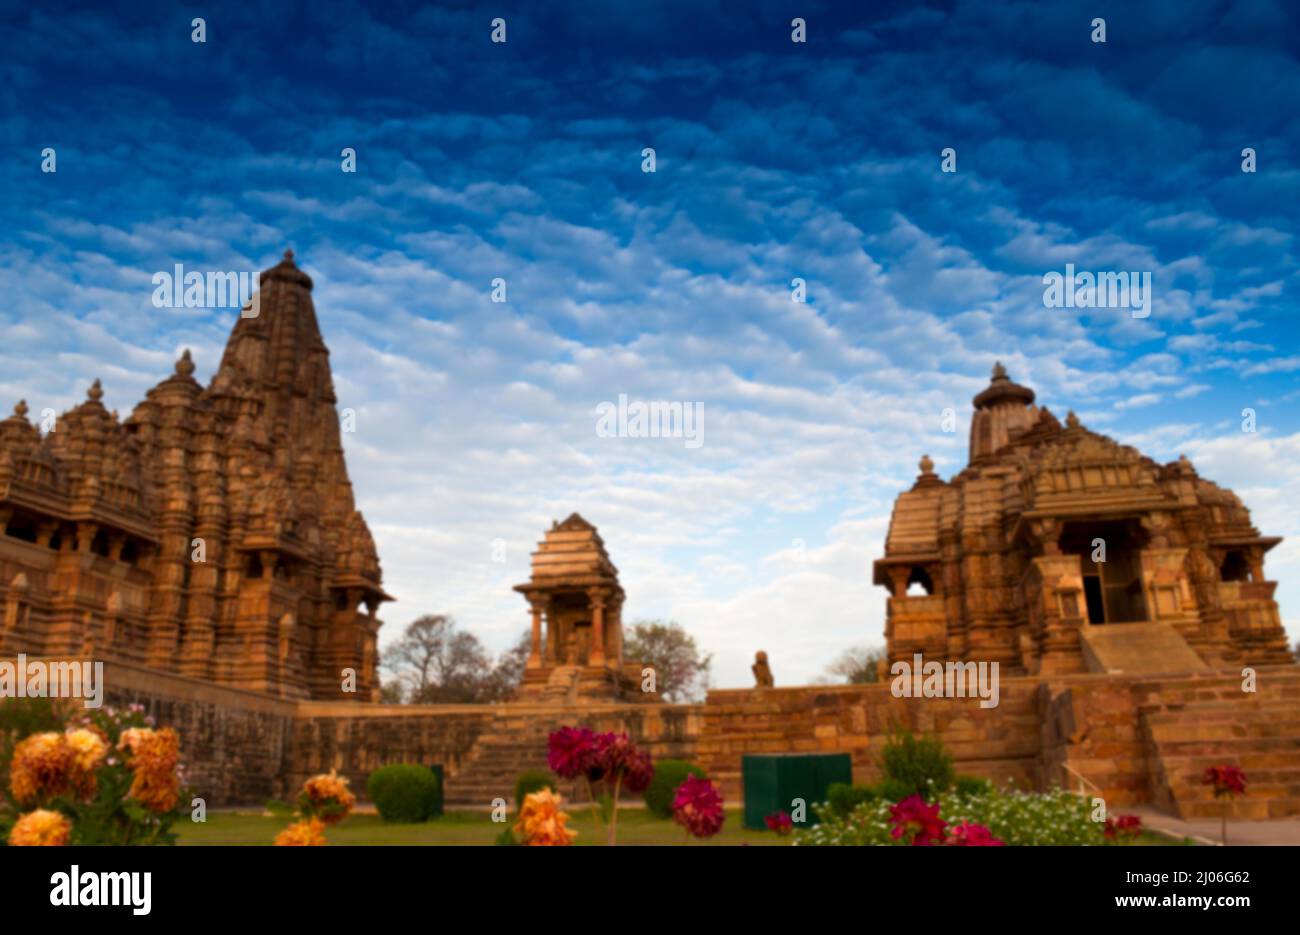 Verschwommenes Bild der westlichen Tempel von Khajuraho, Madhya Pradesh, Indien. Khajuraho ist ein UNESCO-Weltkulturerbe und weltweit bei Touristen beliebt. Stockfoto